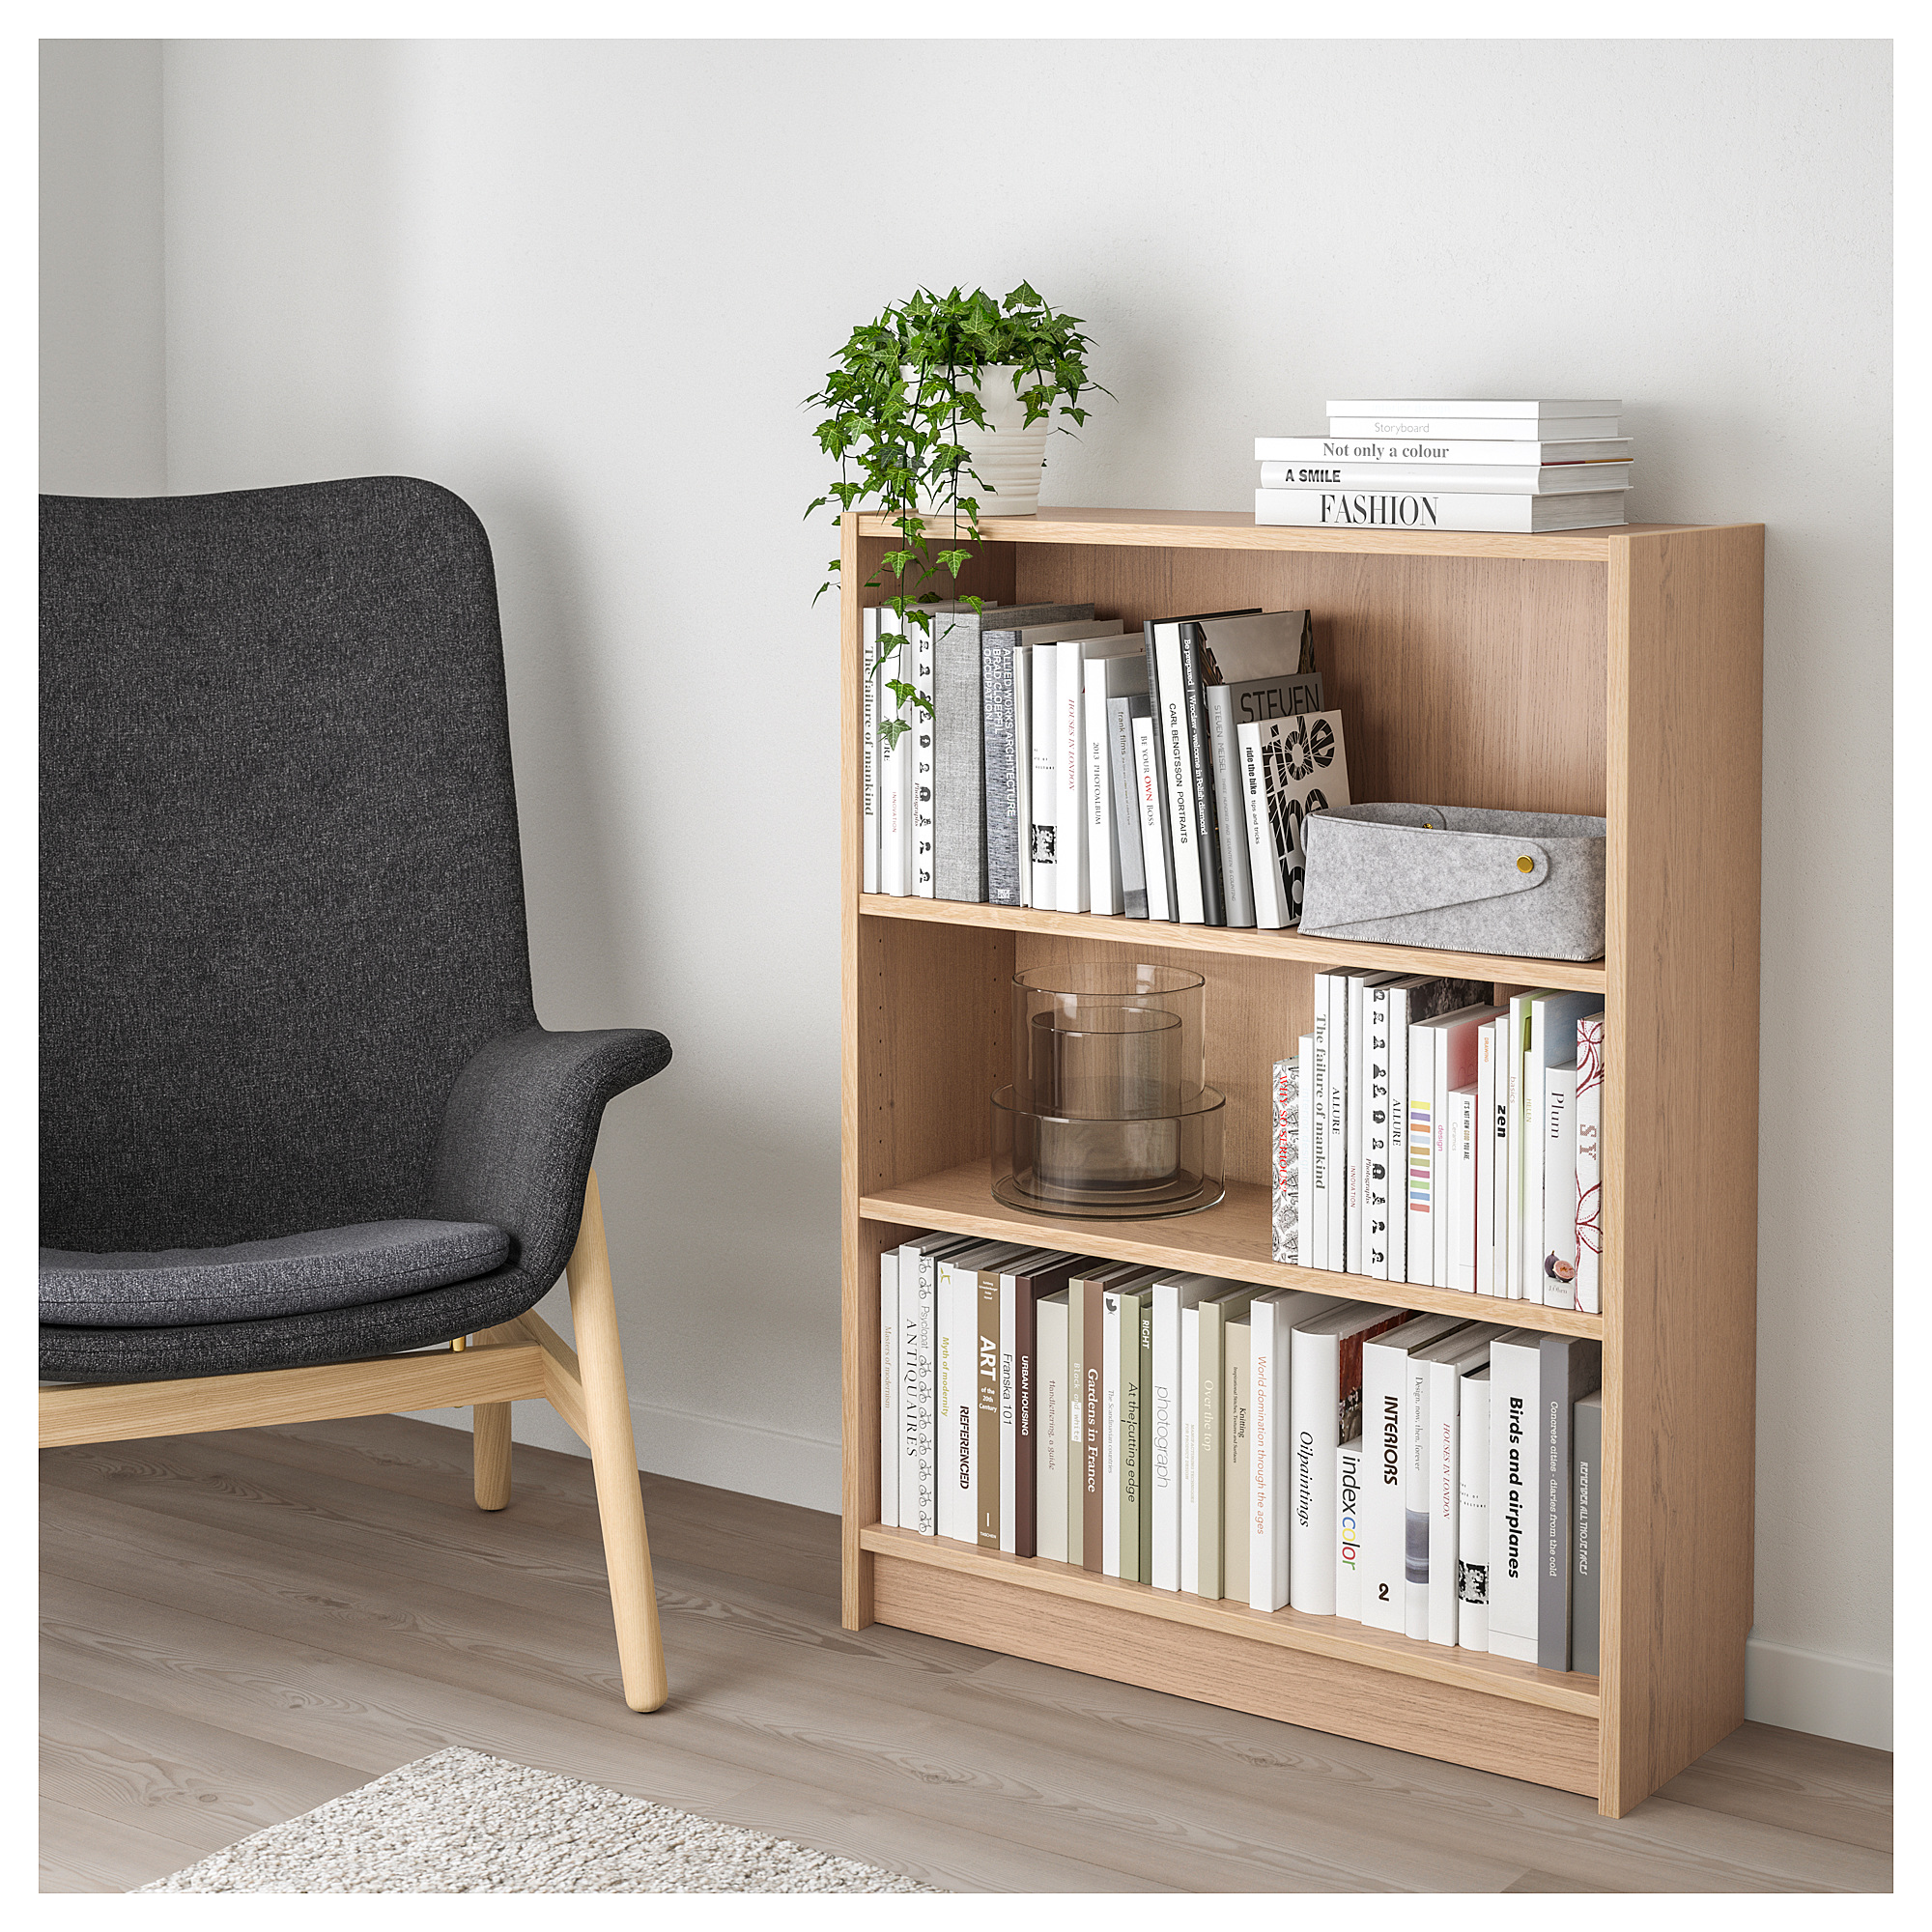 BILLY Rak  Buku  veneer kayu oak diwarnai putih IKEA  